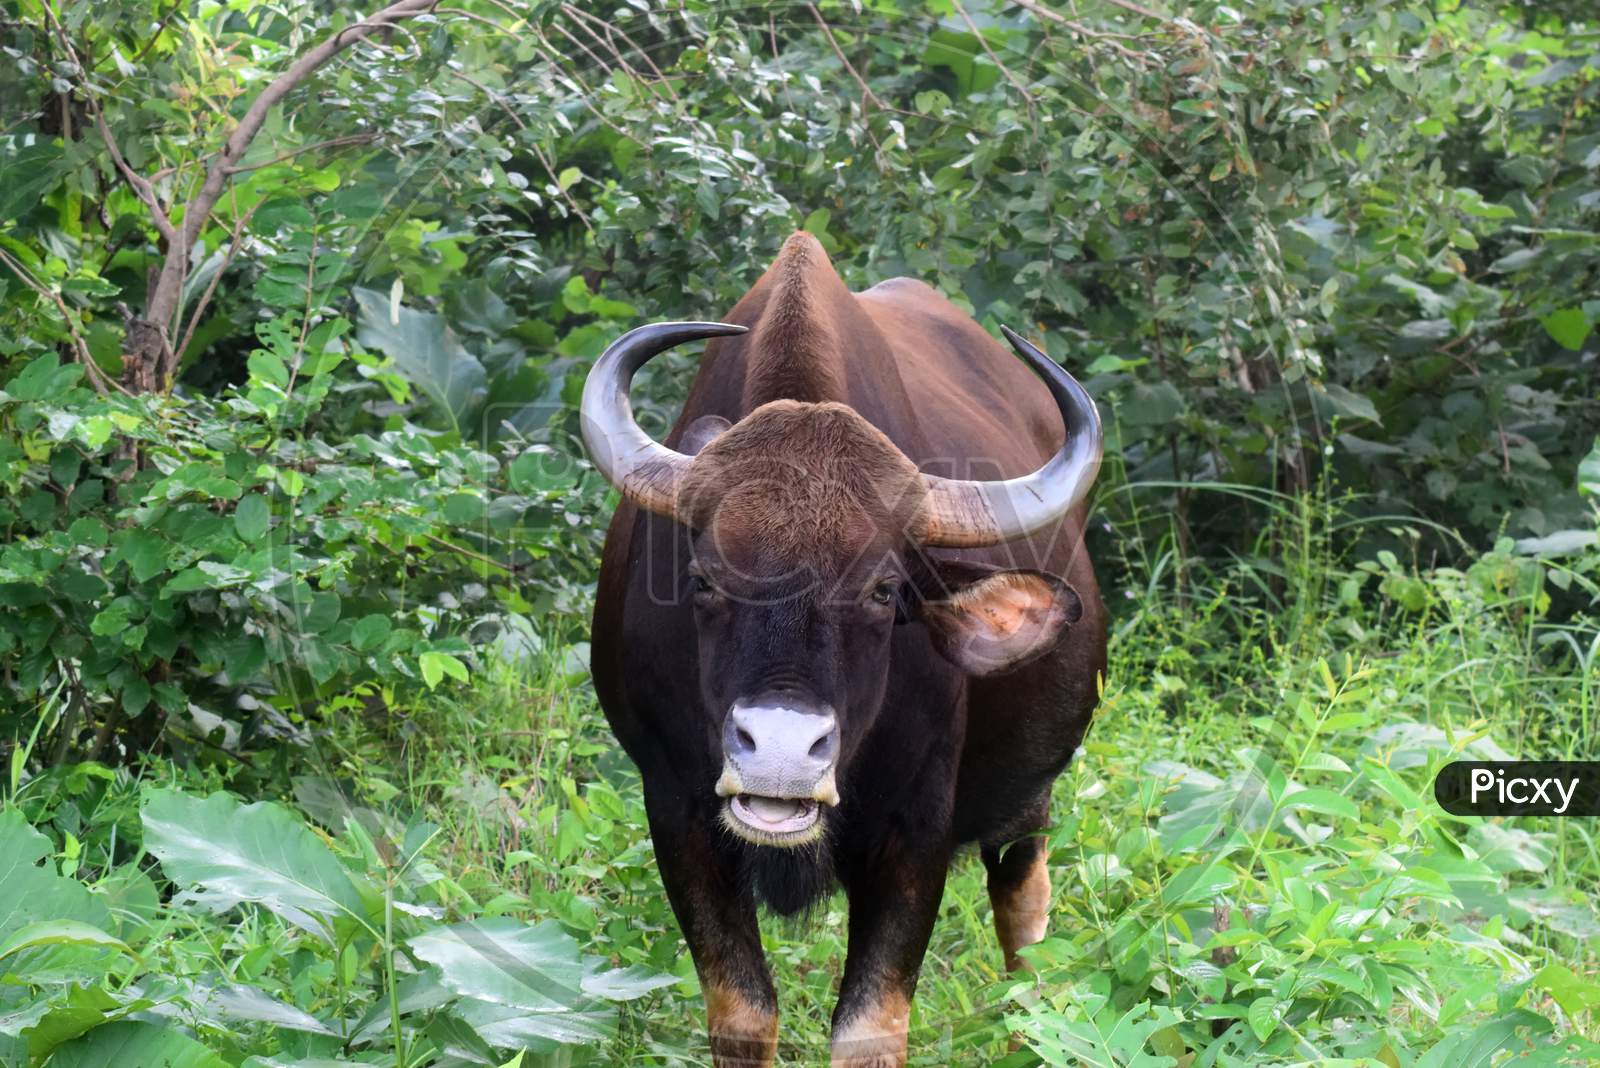 A Bison in a Jungle.